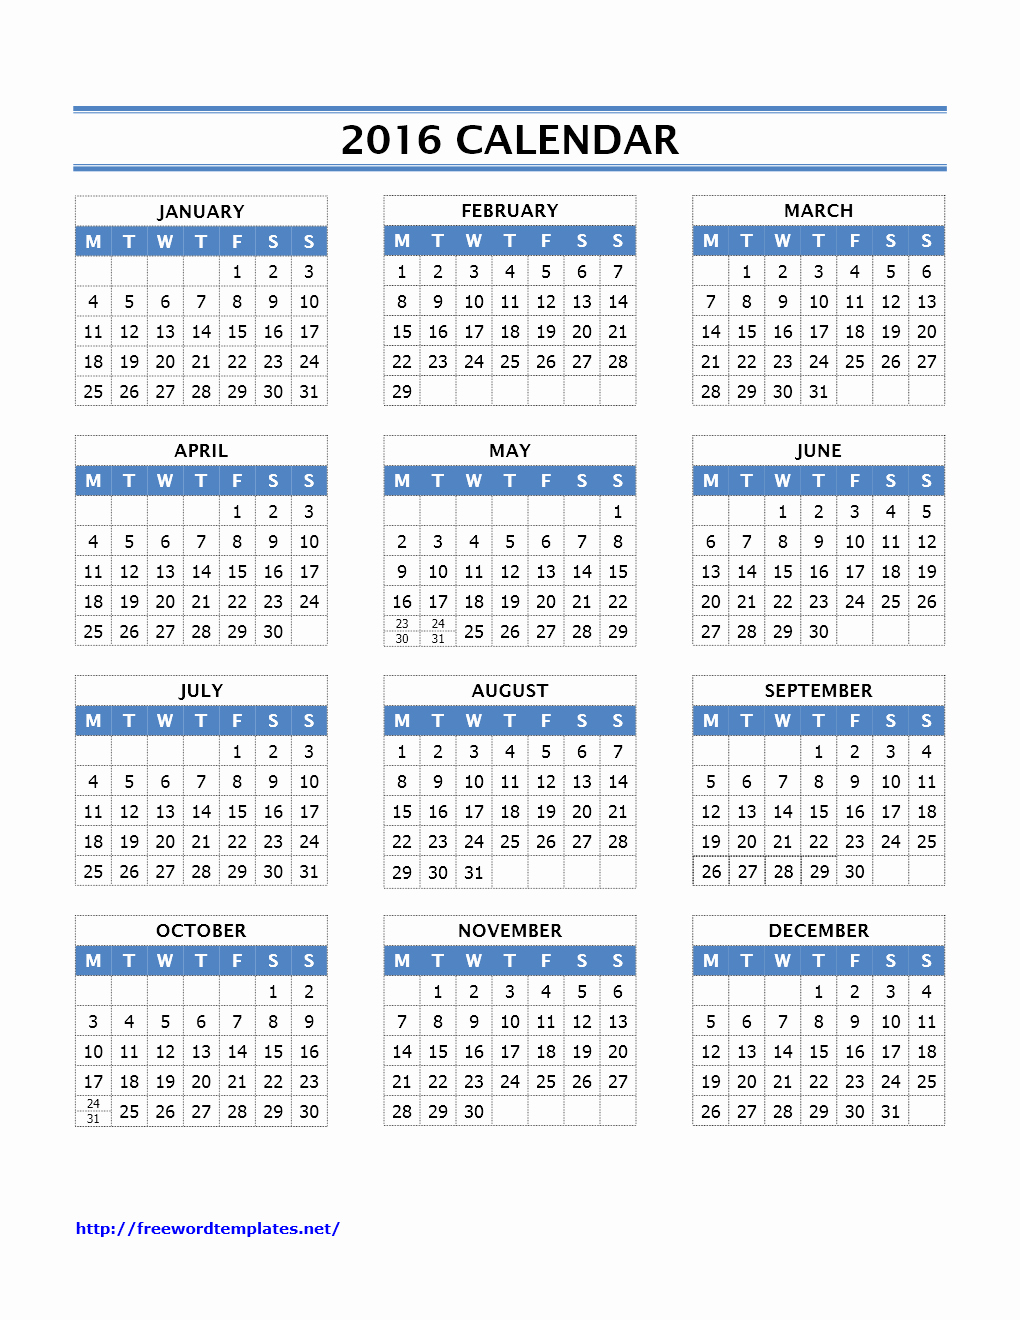 Blank Calendar Template 2016 Best Of 2016 Calendar Templates